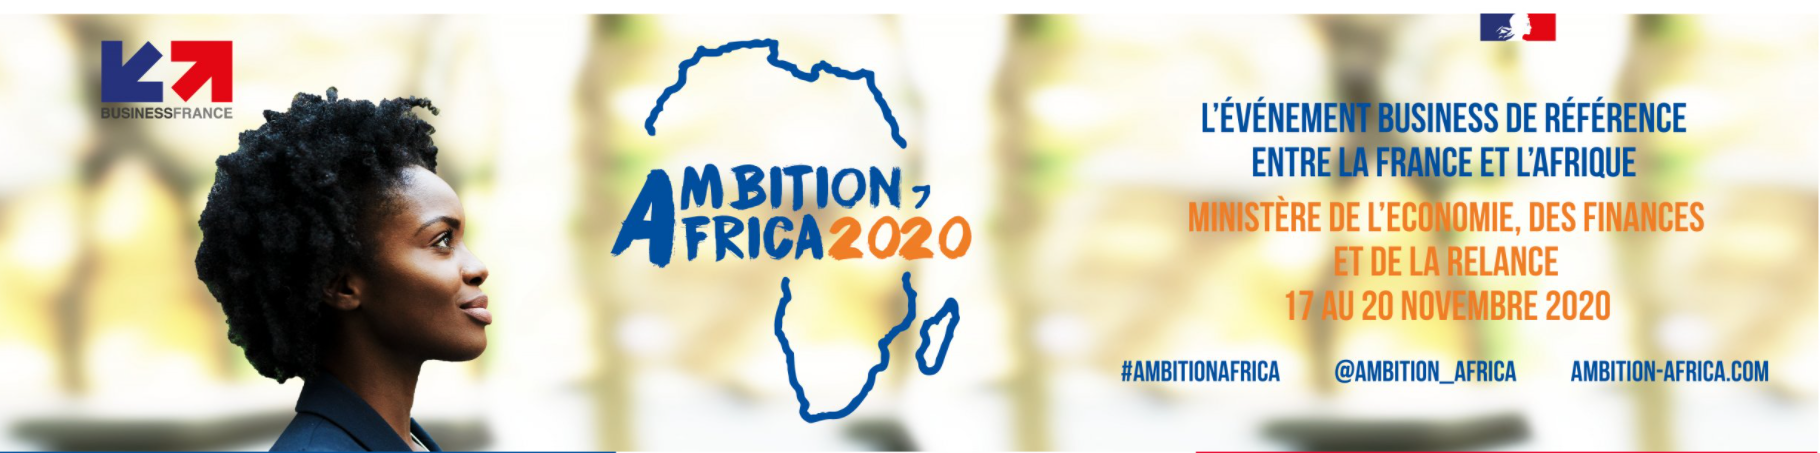 Ambition Africa 2020 : l’événement business de référence entre la France et l’Afrique !